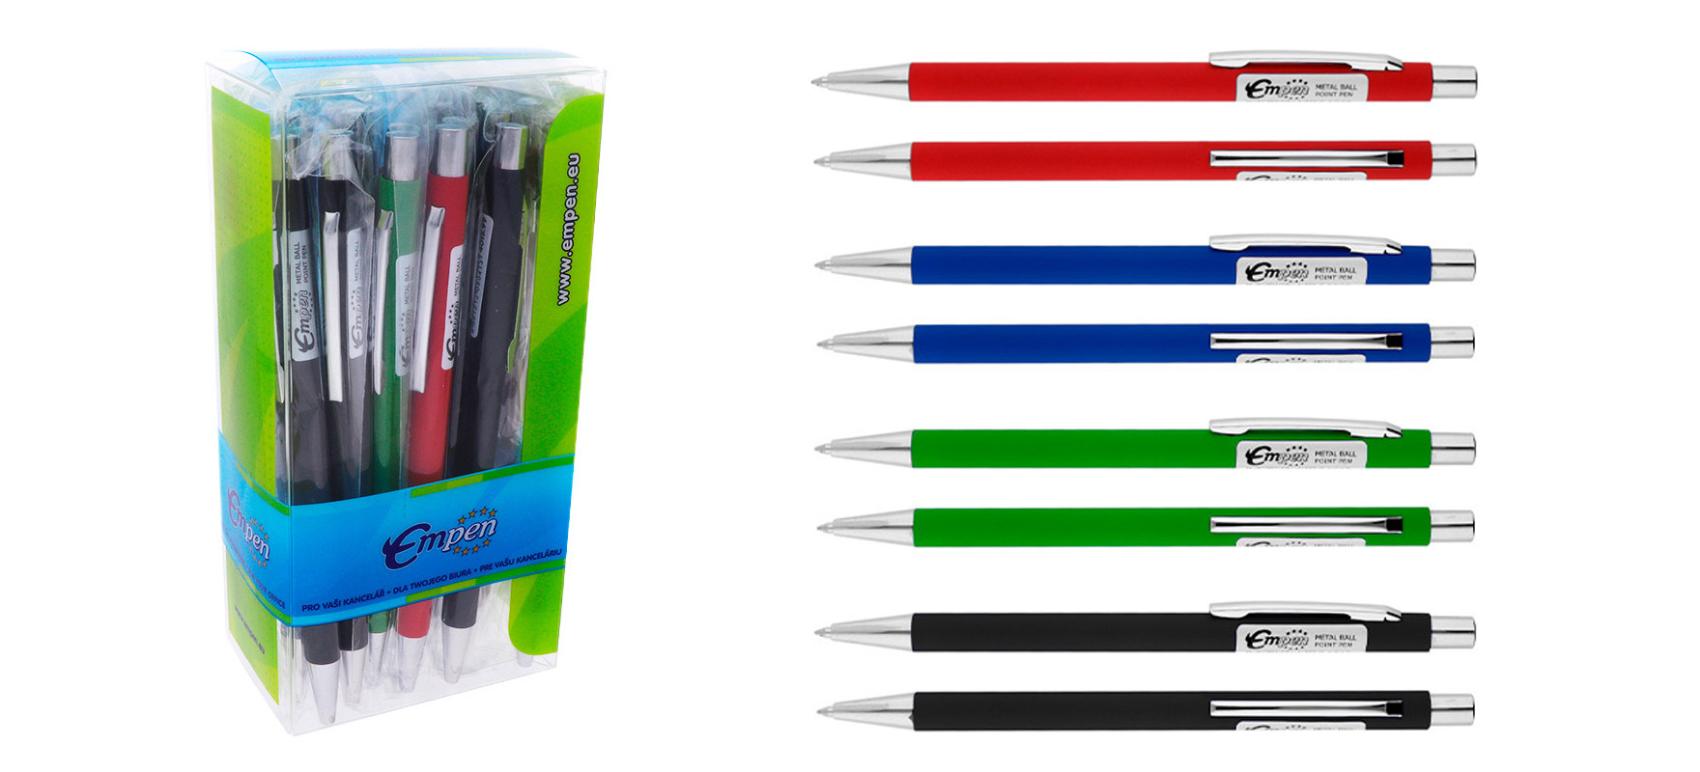 Kulikov pero s pjemnm softovm povrchem mix barev - Kliknutm na obrzek zavete